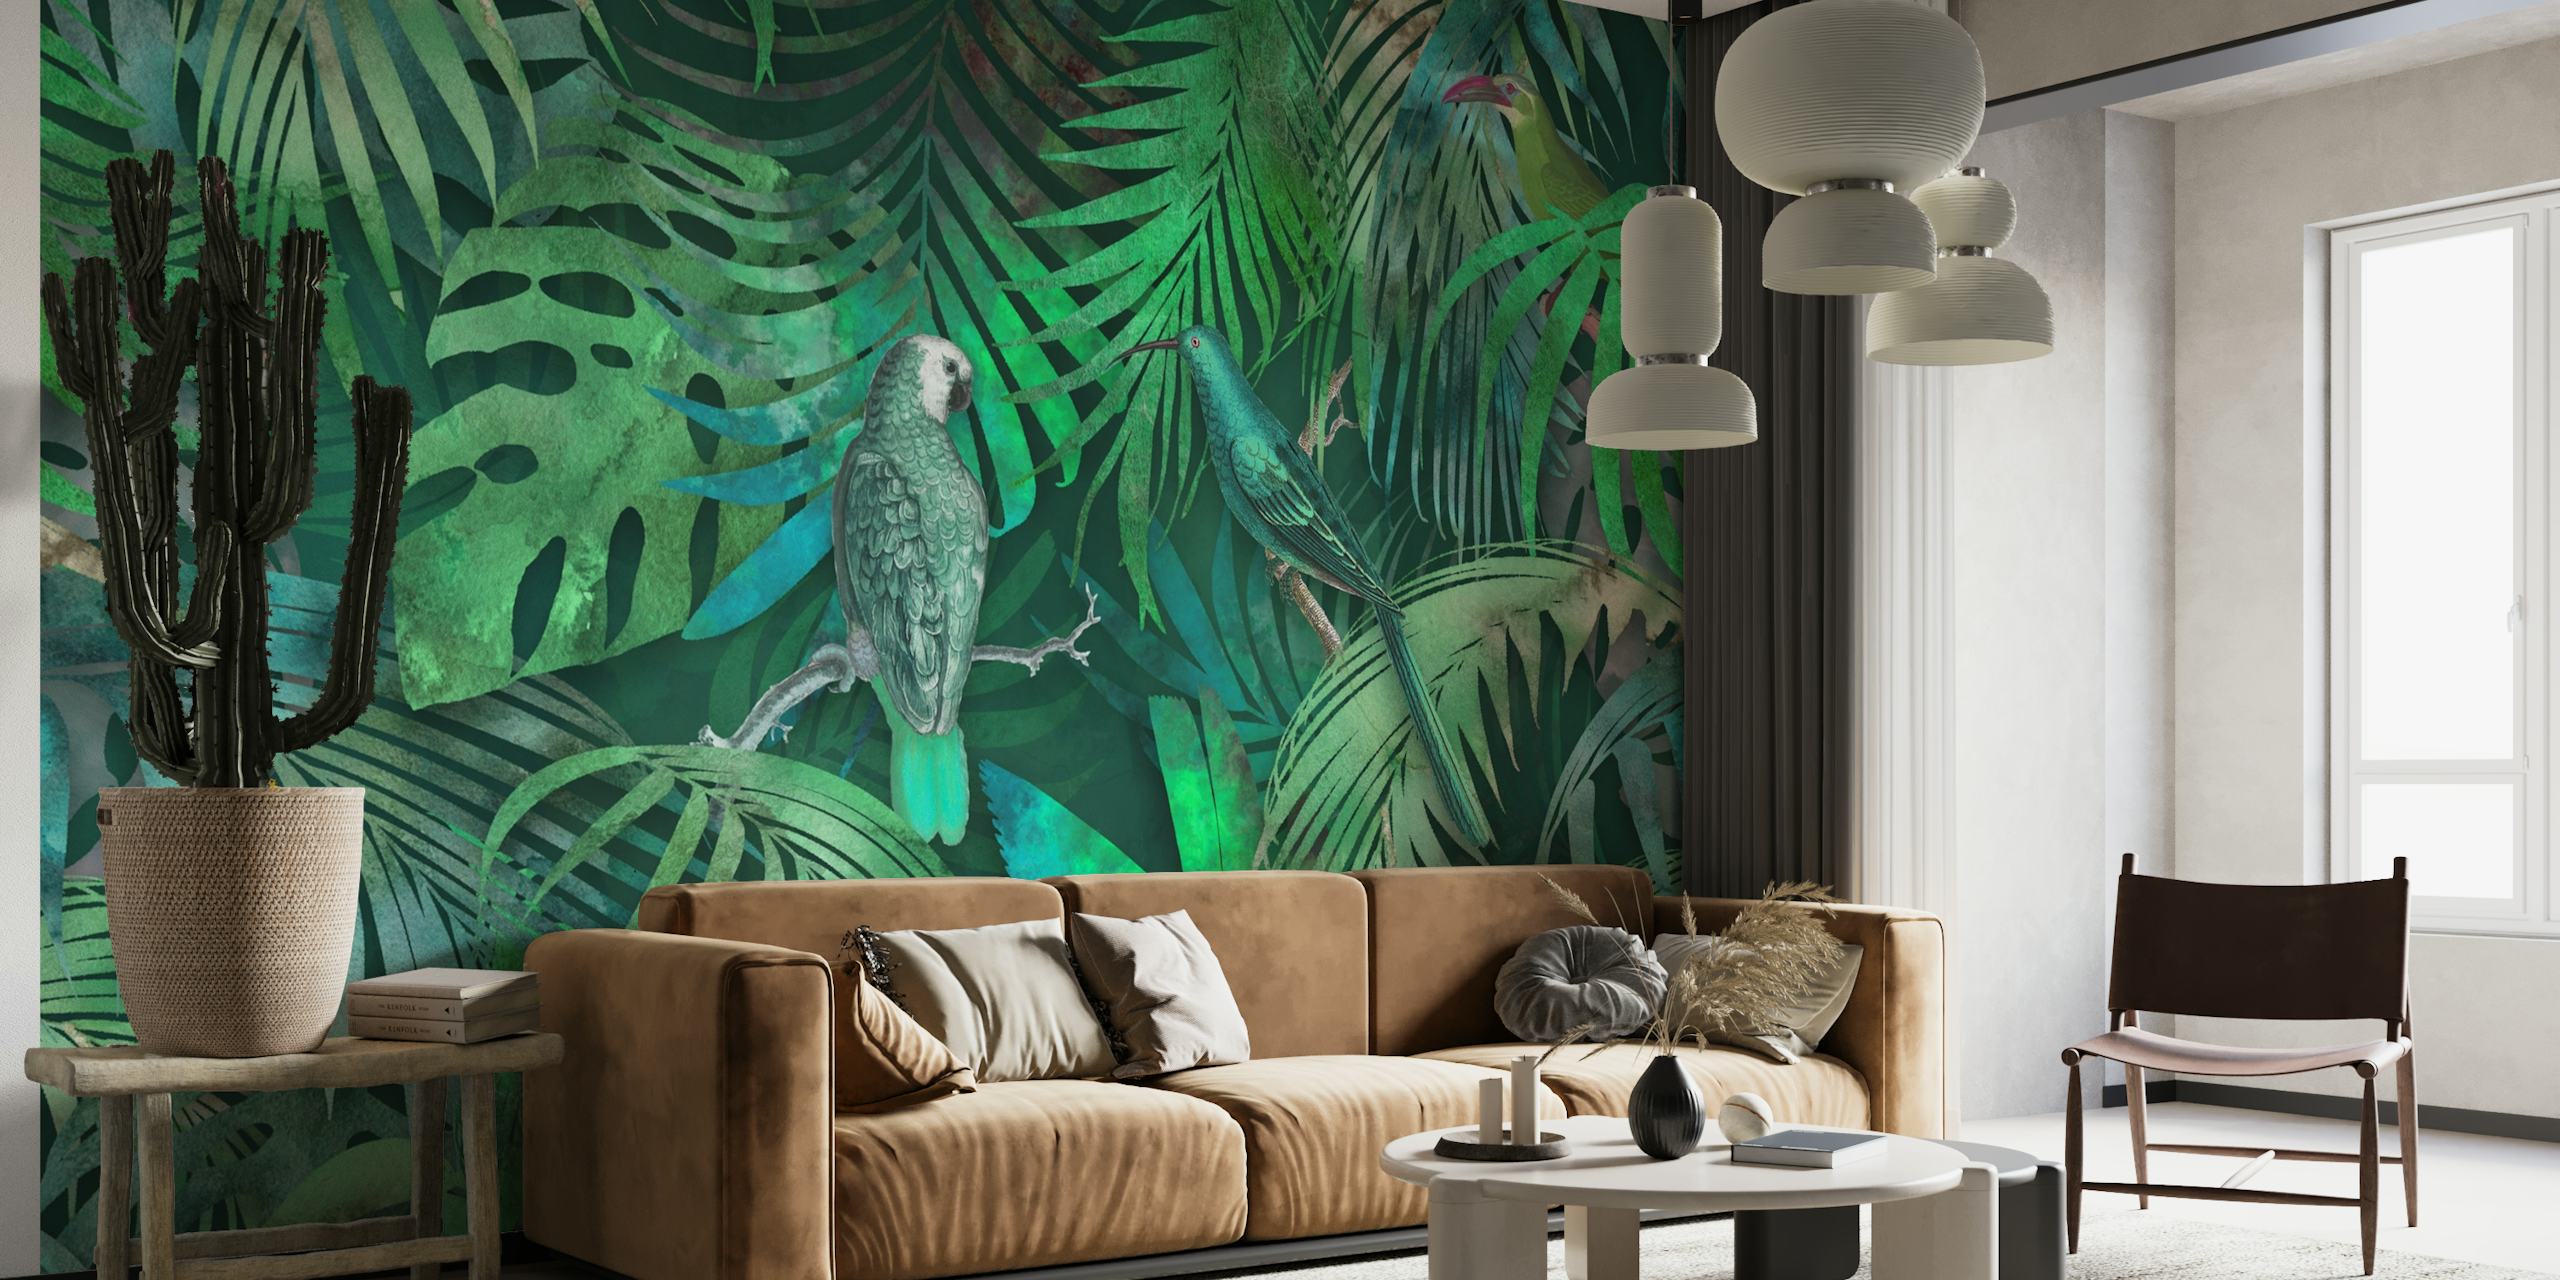 Une fresque murale verdoyante avec des perroquets cachés parmi les feuilles tropicales